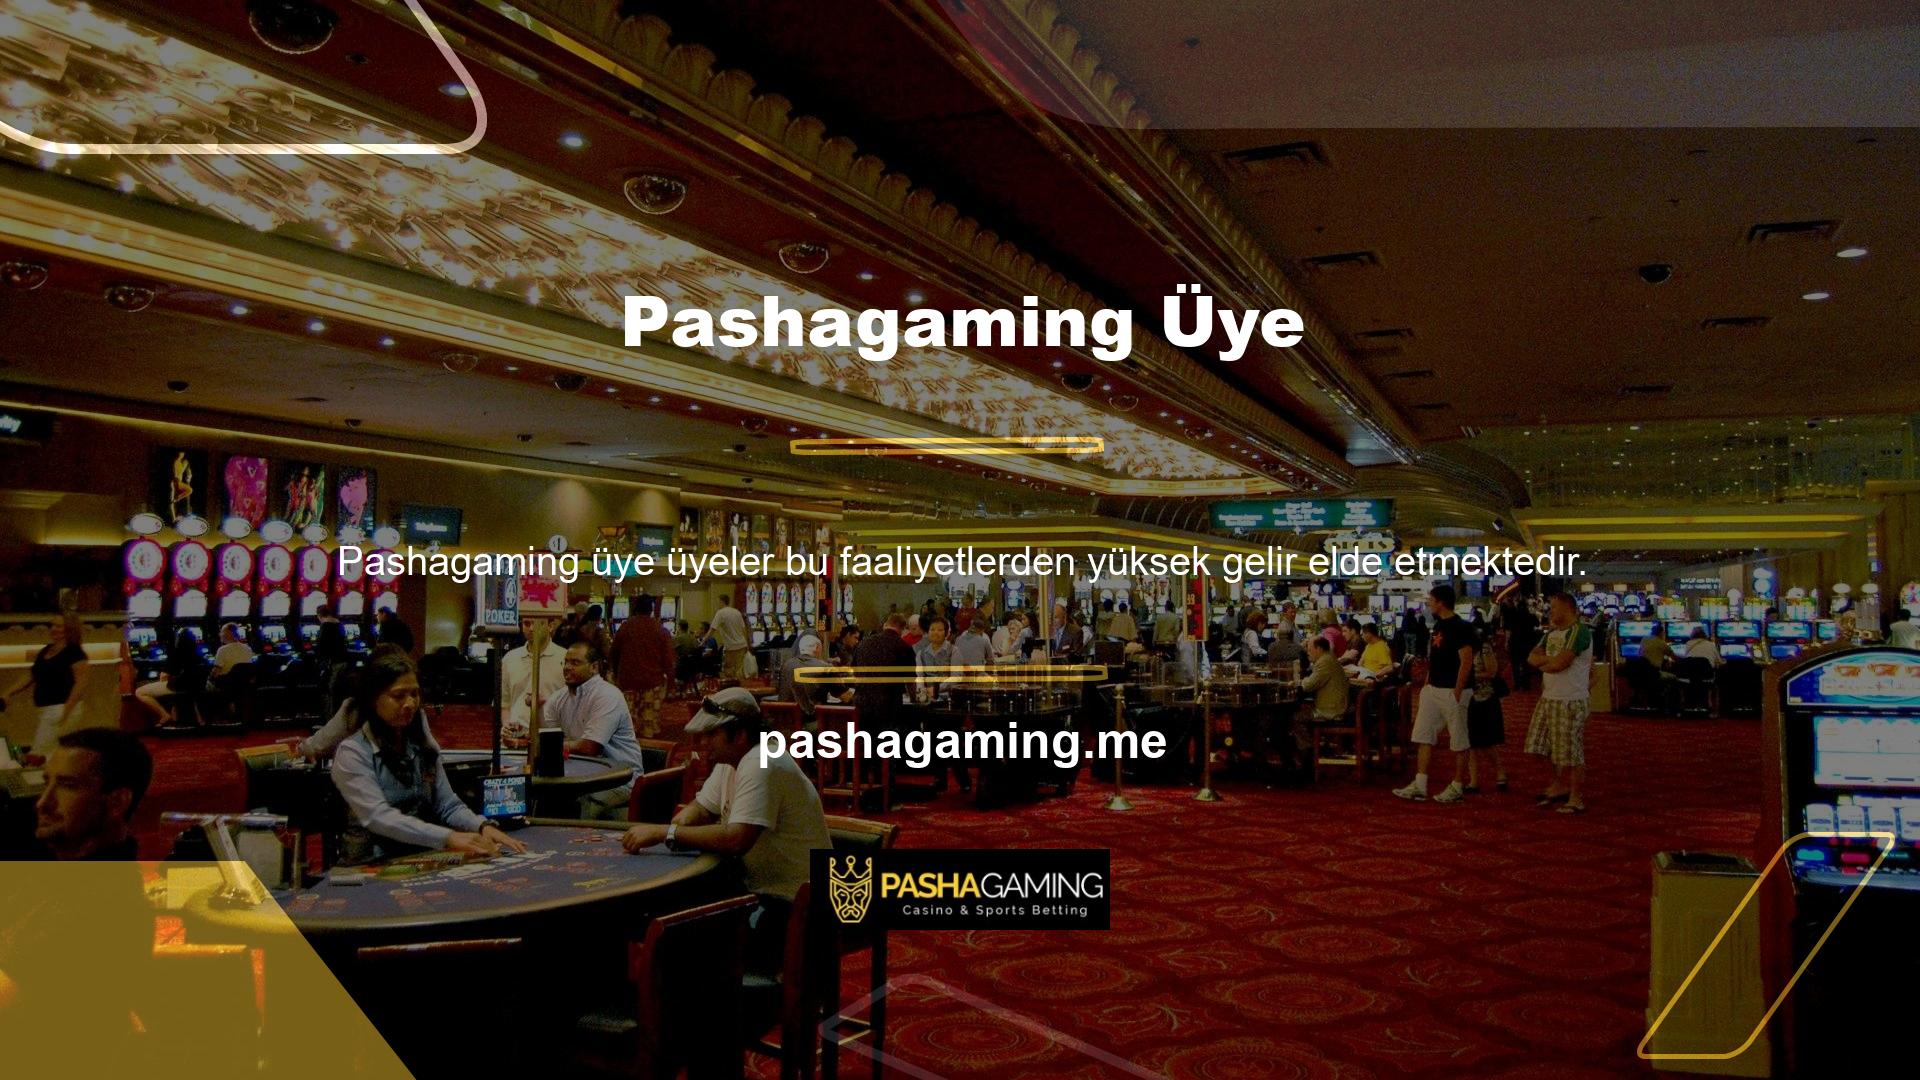 Pashagaming internet sitesi üzerinden oyun oynayarak para kazanmak isteyen adayların öncelikle üyelik kayıt işlemini güncel bilgilerle tamamlaması gerekmektedir